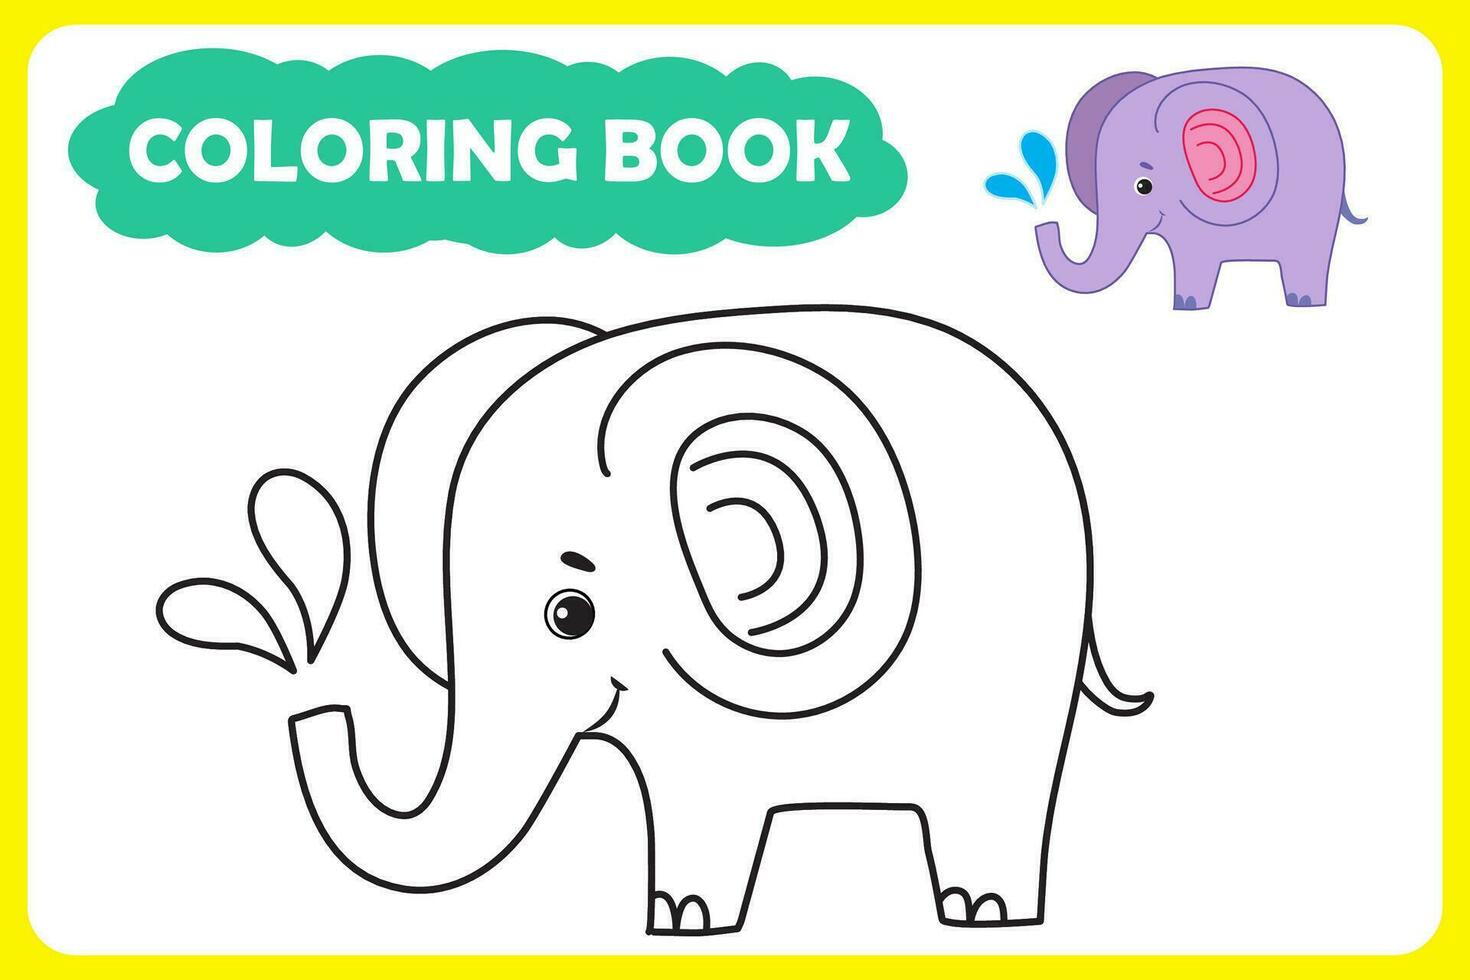 colorazione libro per bambini. vettore illustrazione di africano animale